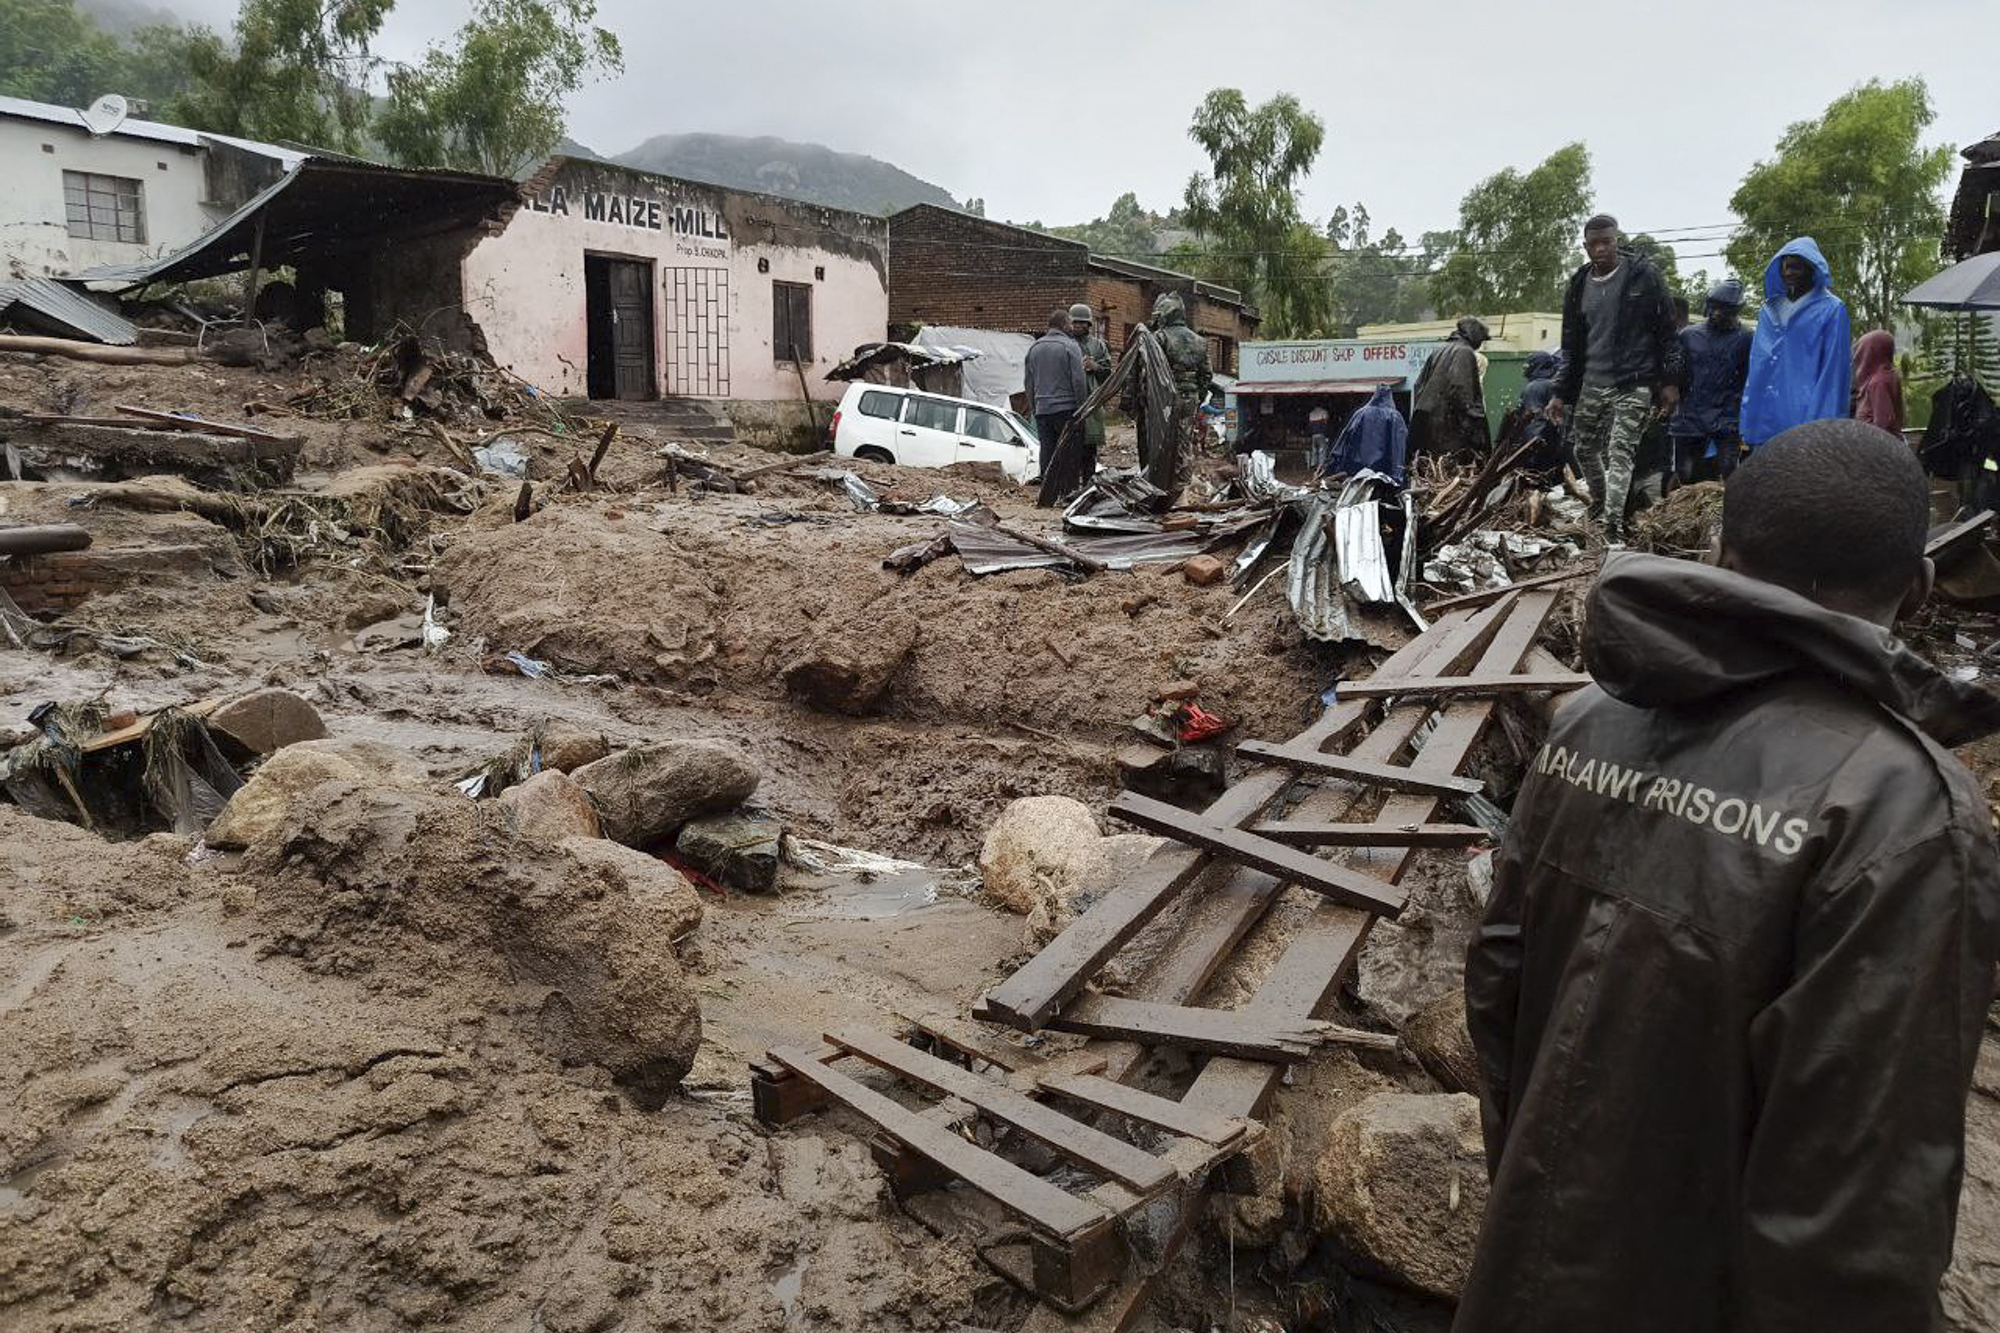 En varias regiones del sur de Malaui, las autoridades declararon el estado de catástrofe, incluido en la capital económica Blantyre, anunció la presidencia. (Foto por Jack McBrams / AFP)